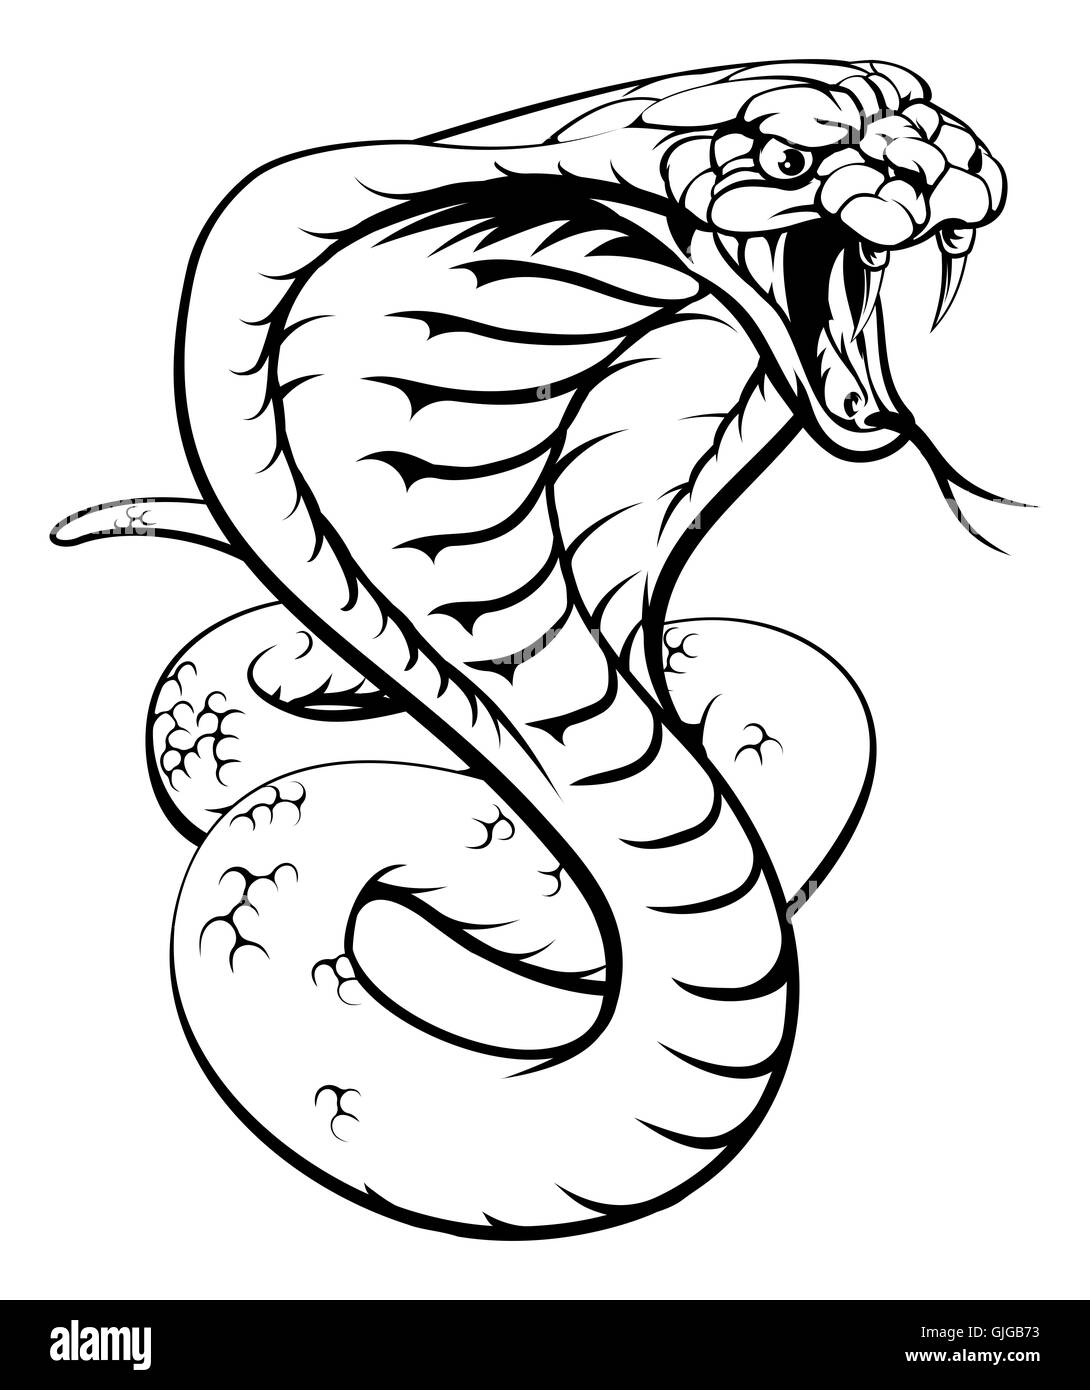 Une illustration d'un roi cobra snake en noir et blanc Banque D'Images